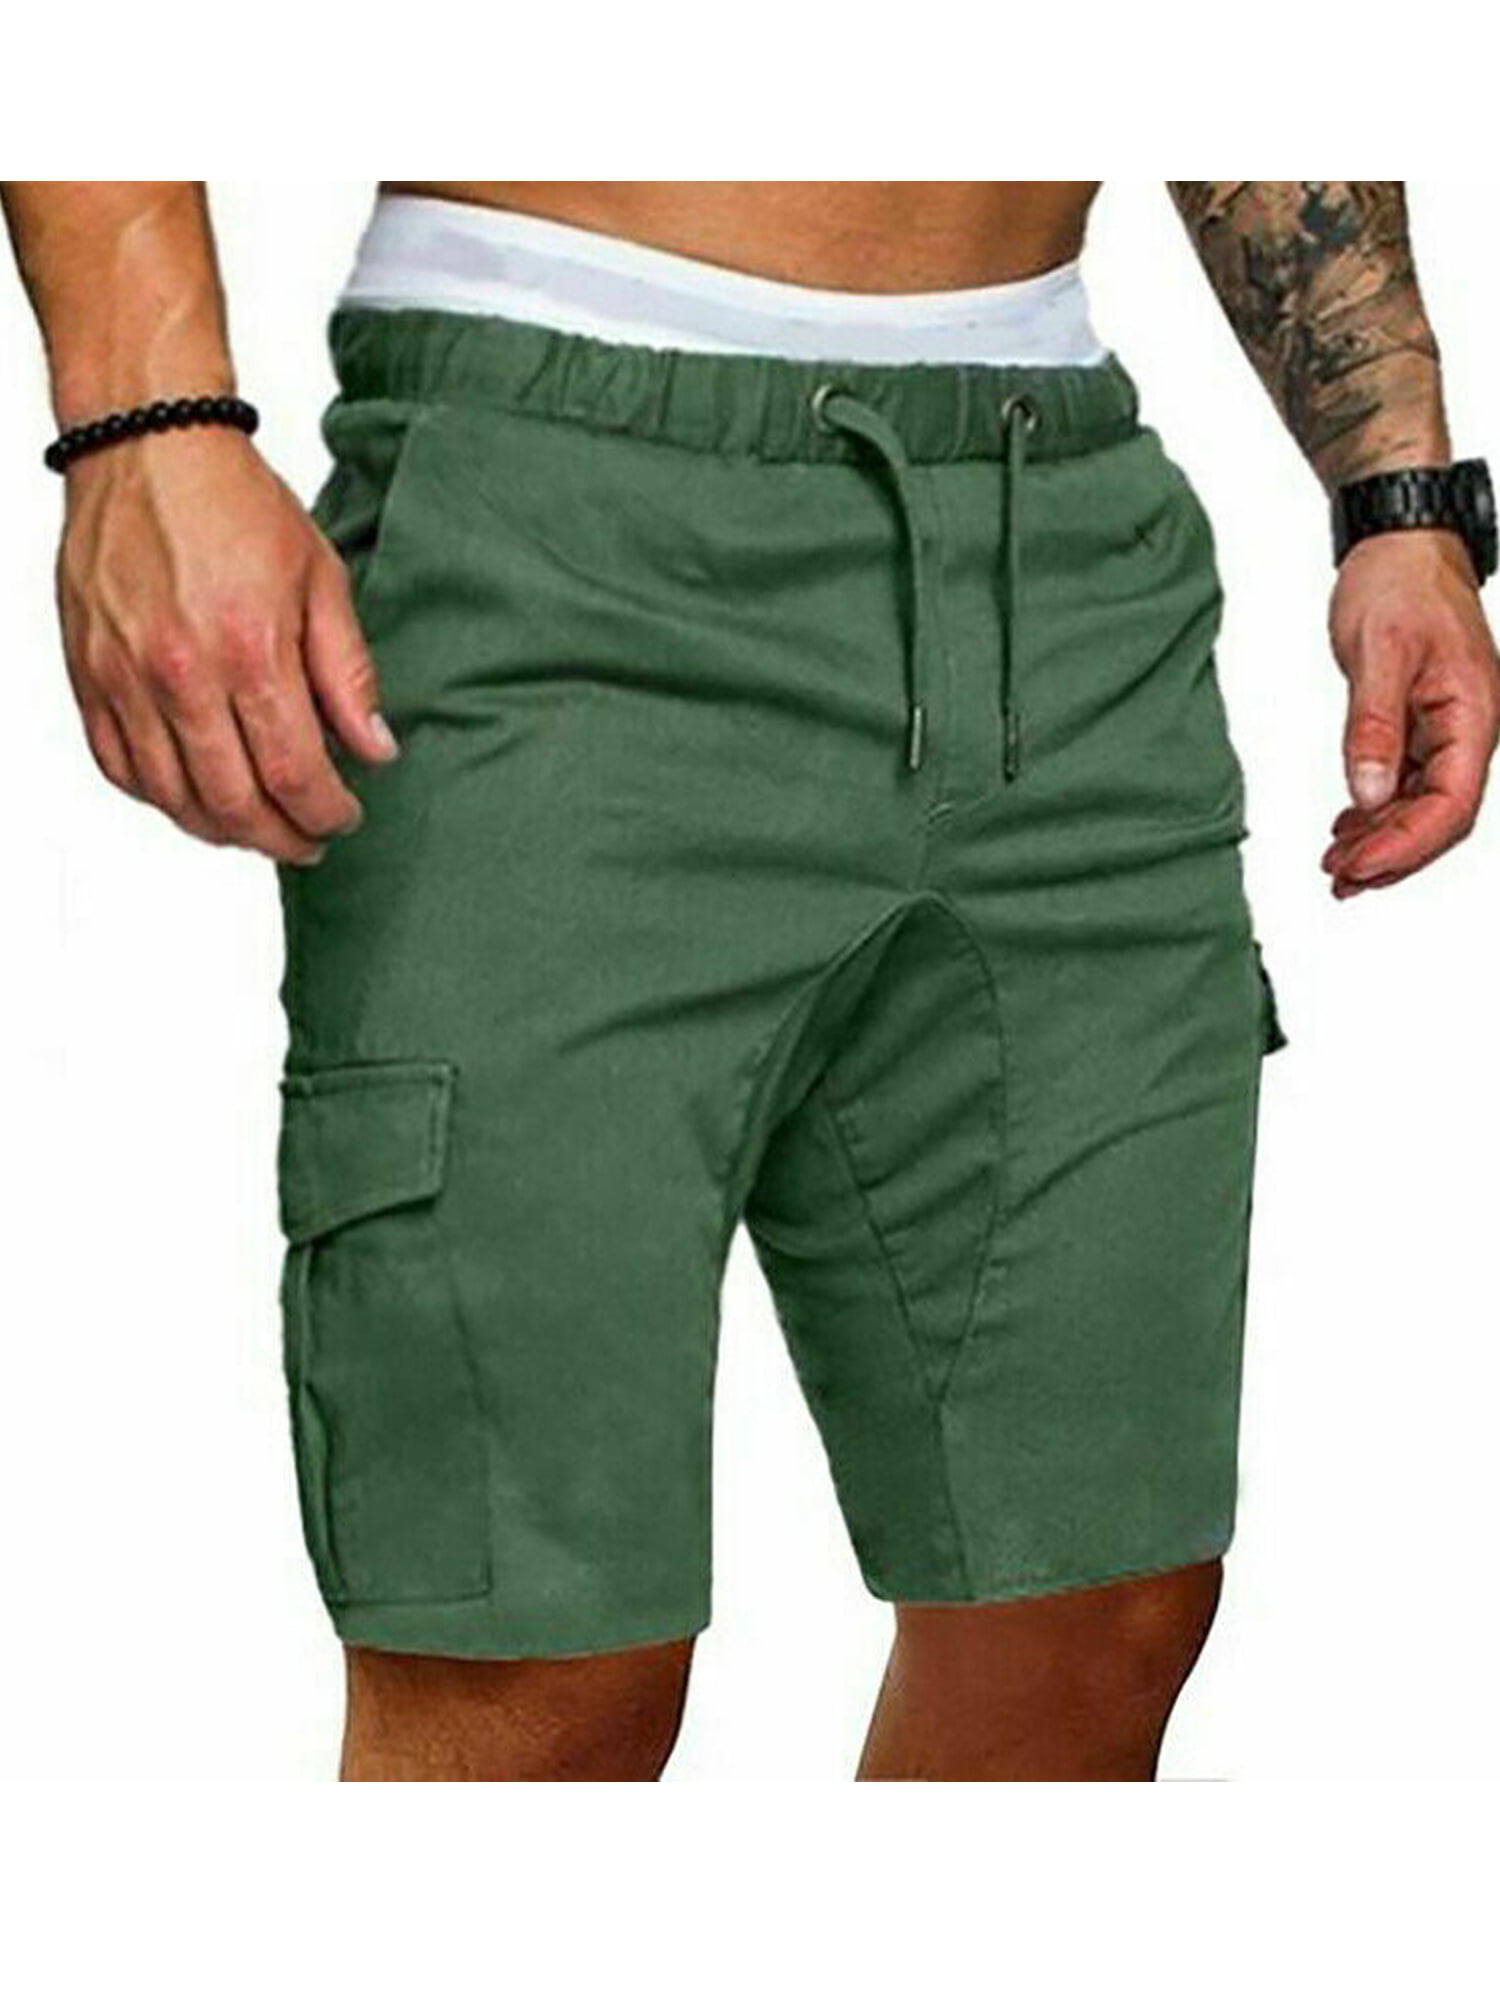 Best Shorts Length For Men